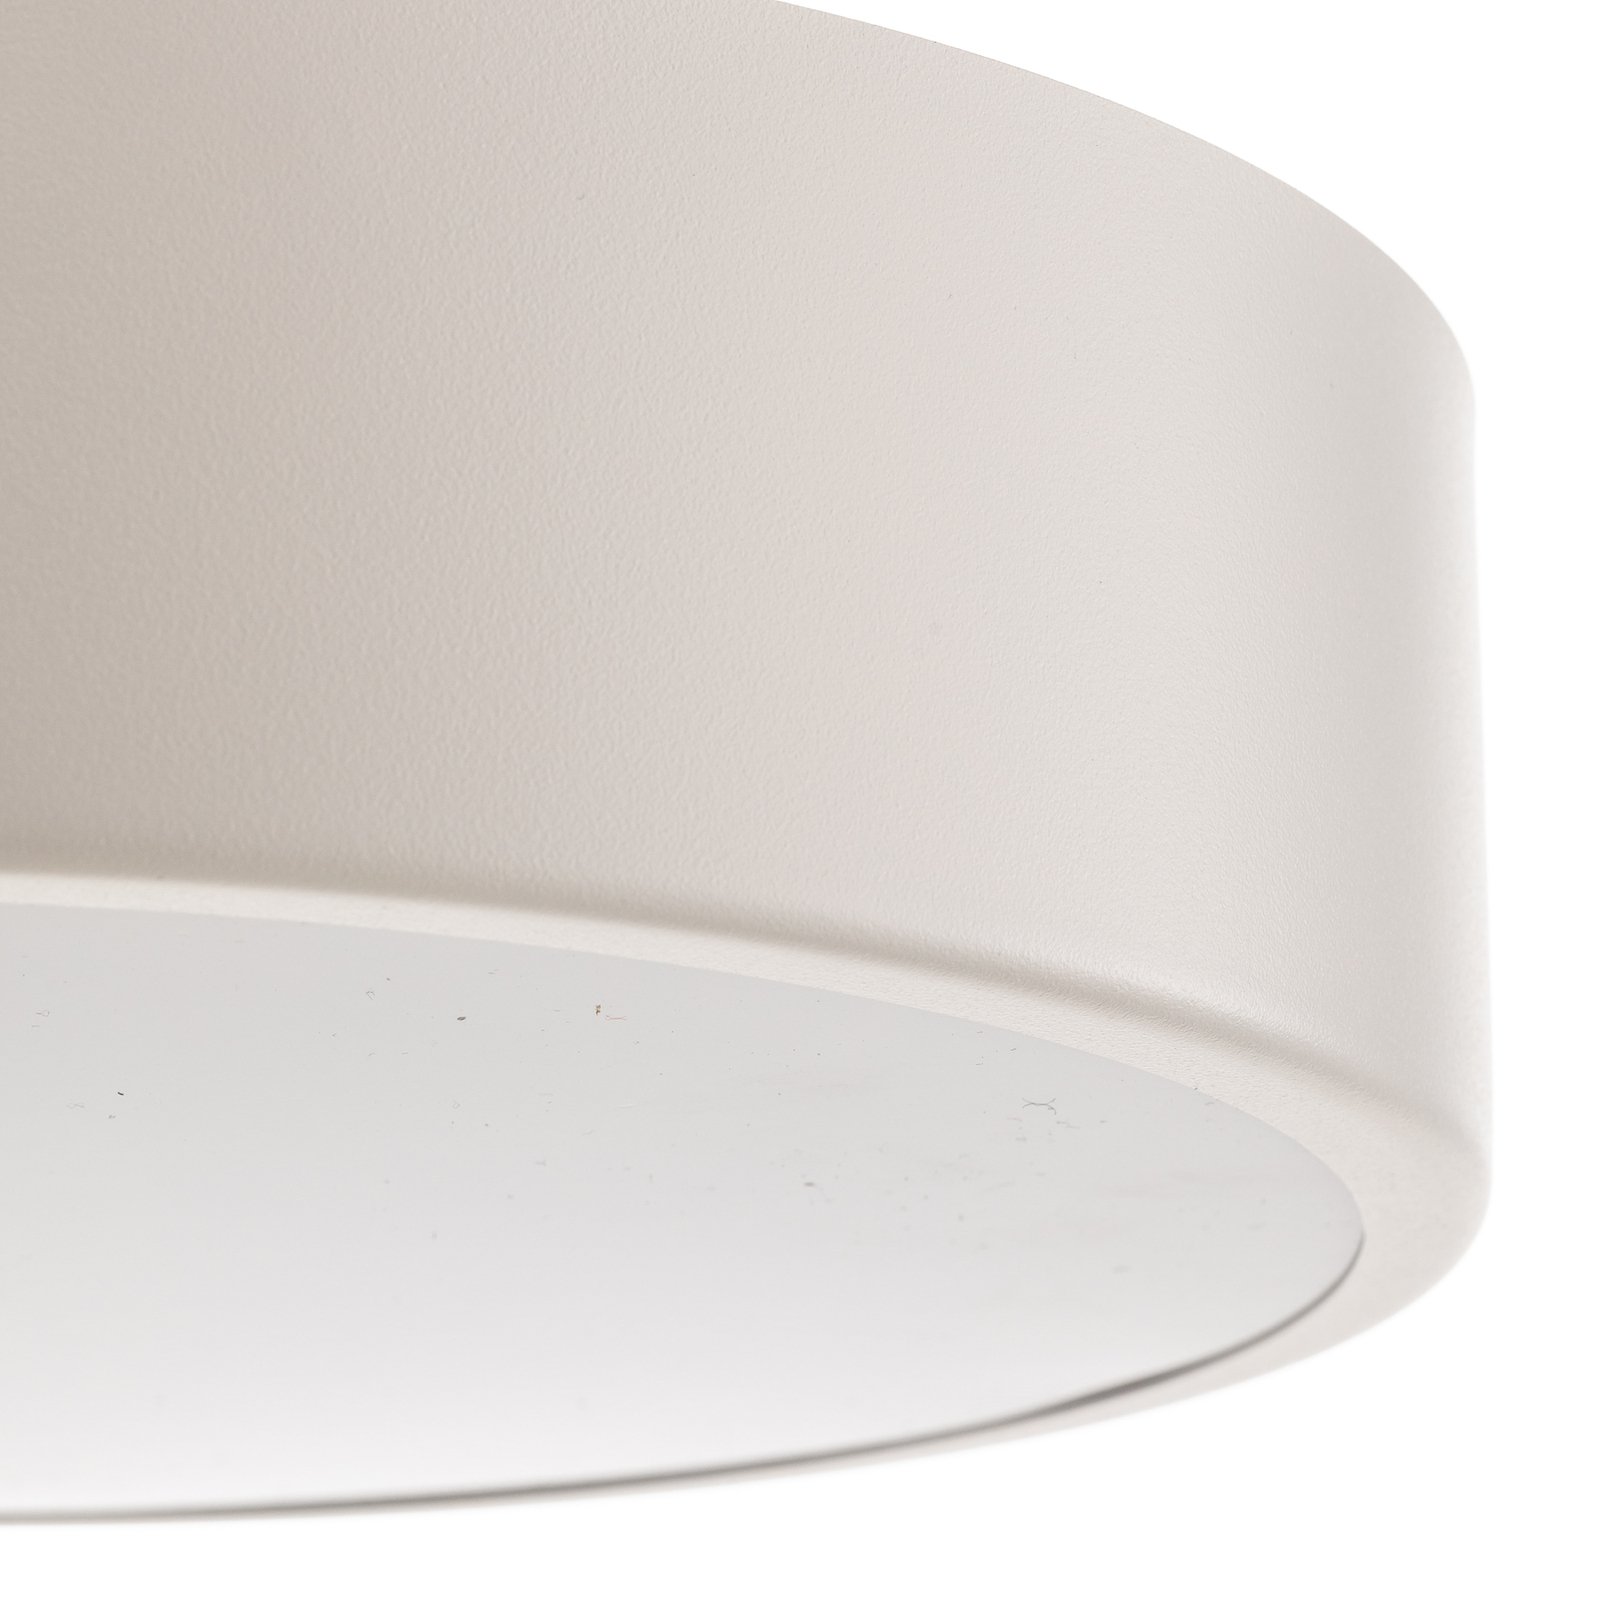 Cleo 300 ceiling light, IP54, Ø 30 cm white